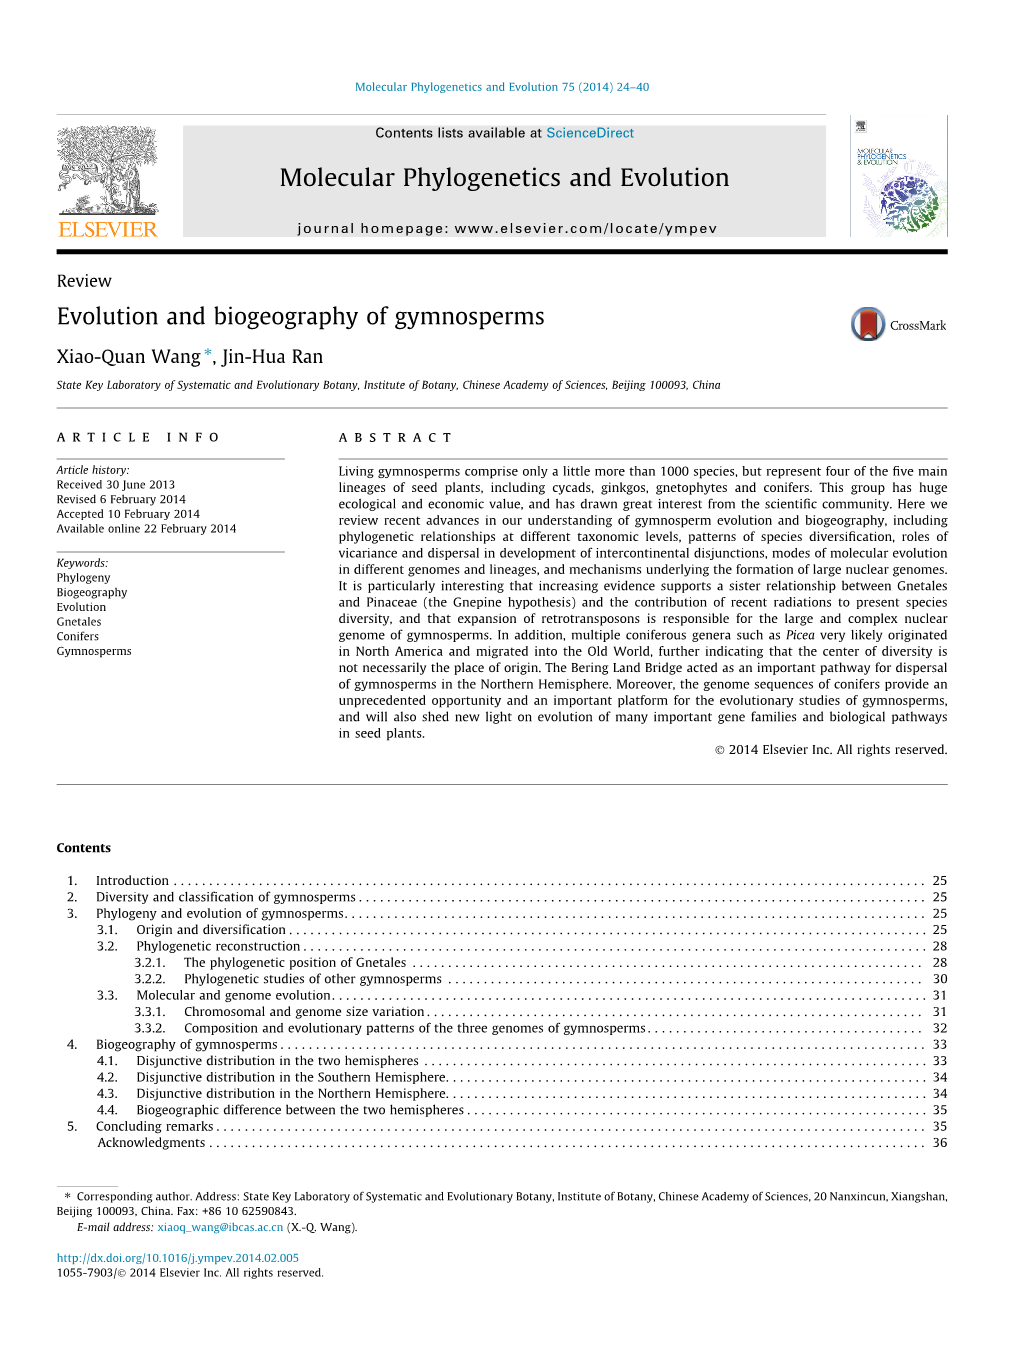 Evolution and Biogeography of Gymnosperms ⇑ Xiao-Quan Wang , Jin-Hua Ran